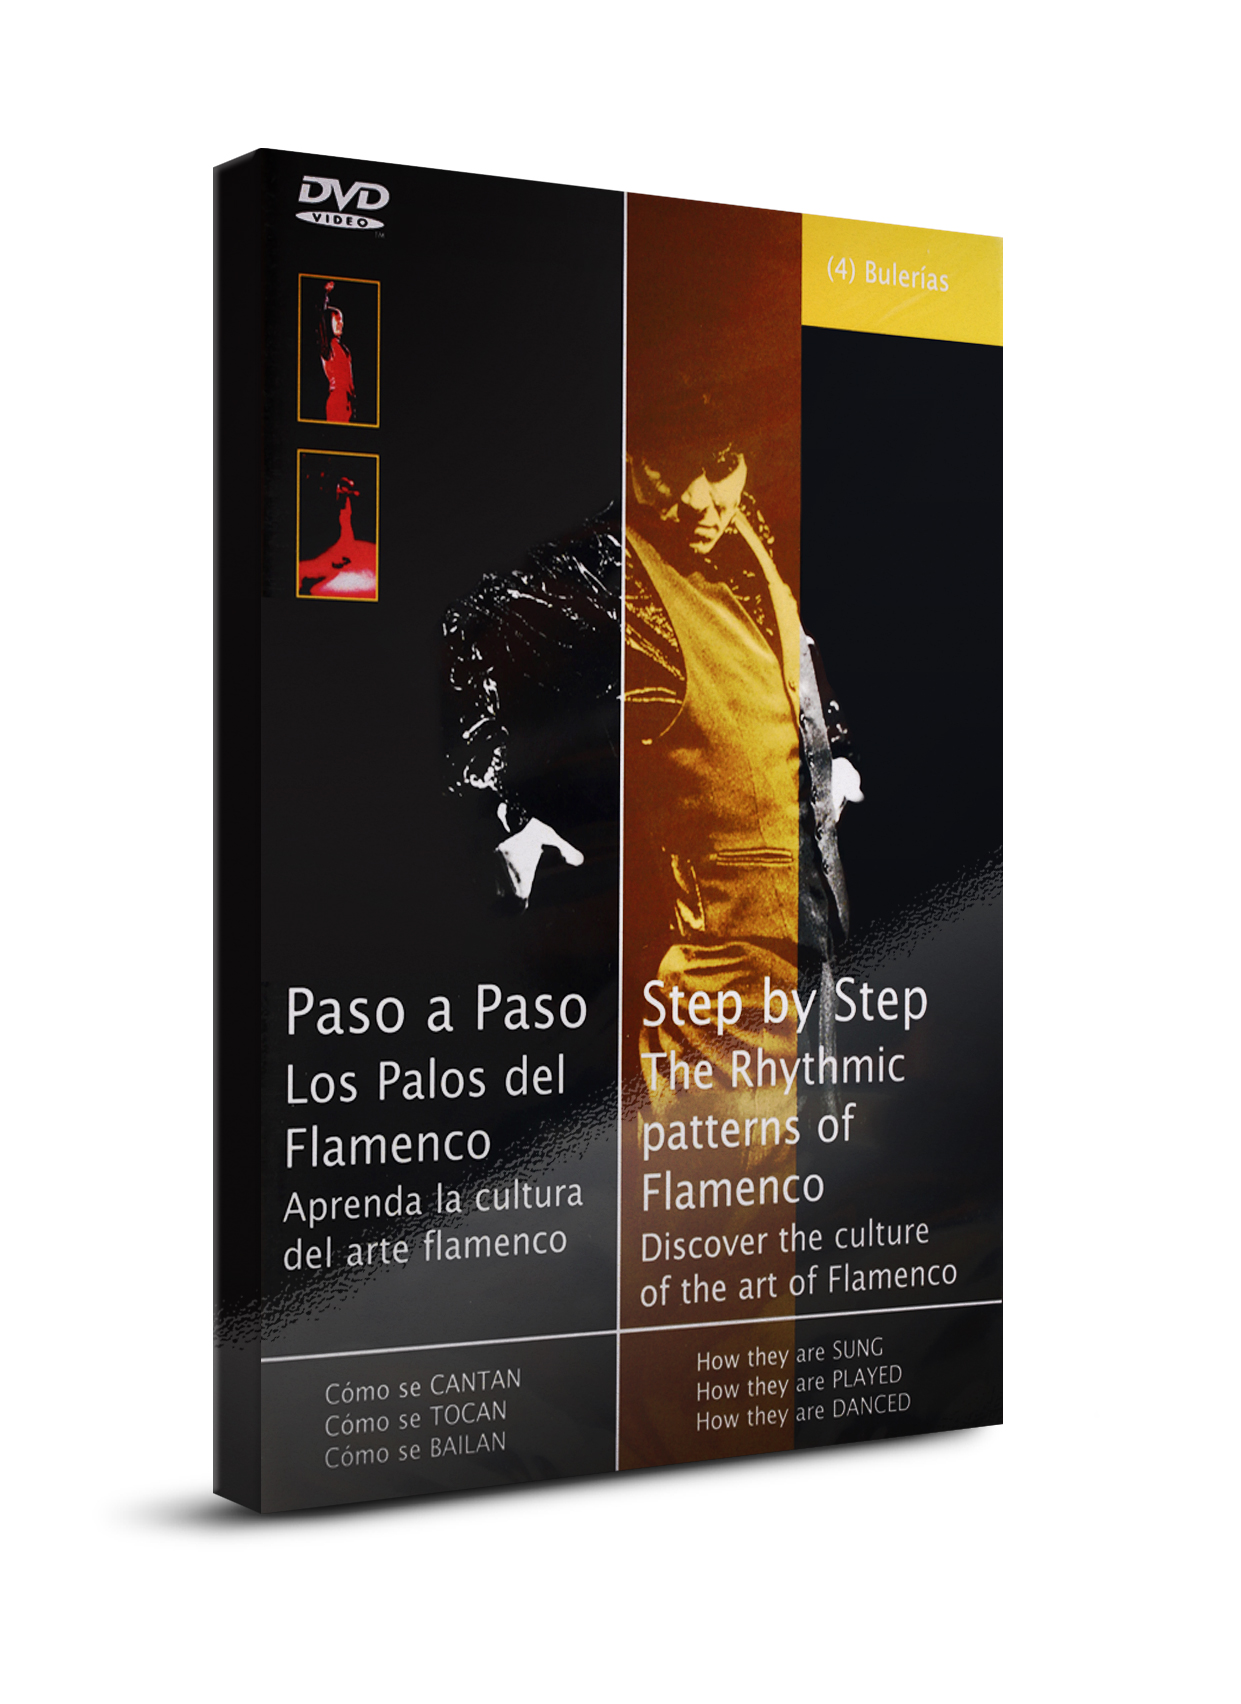 Flamenco danslessen Bulerías DVD